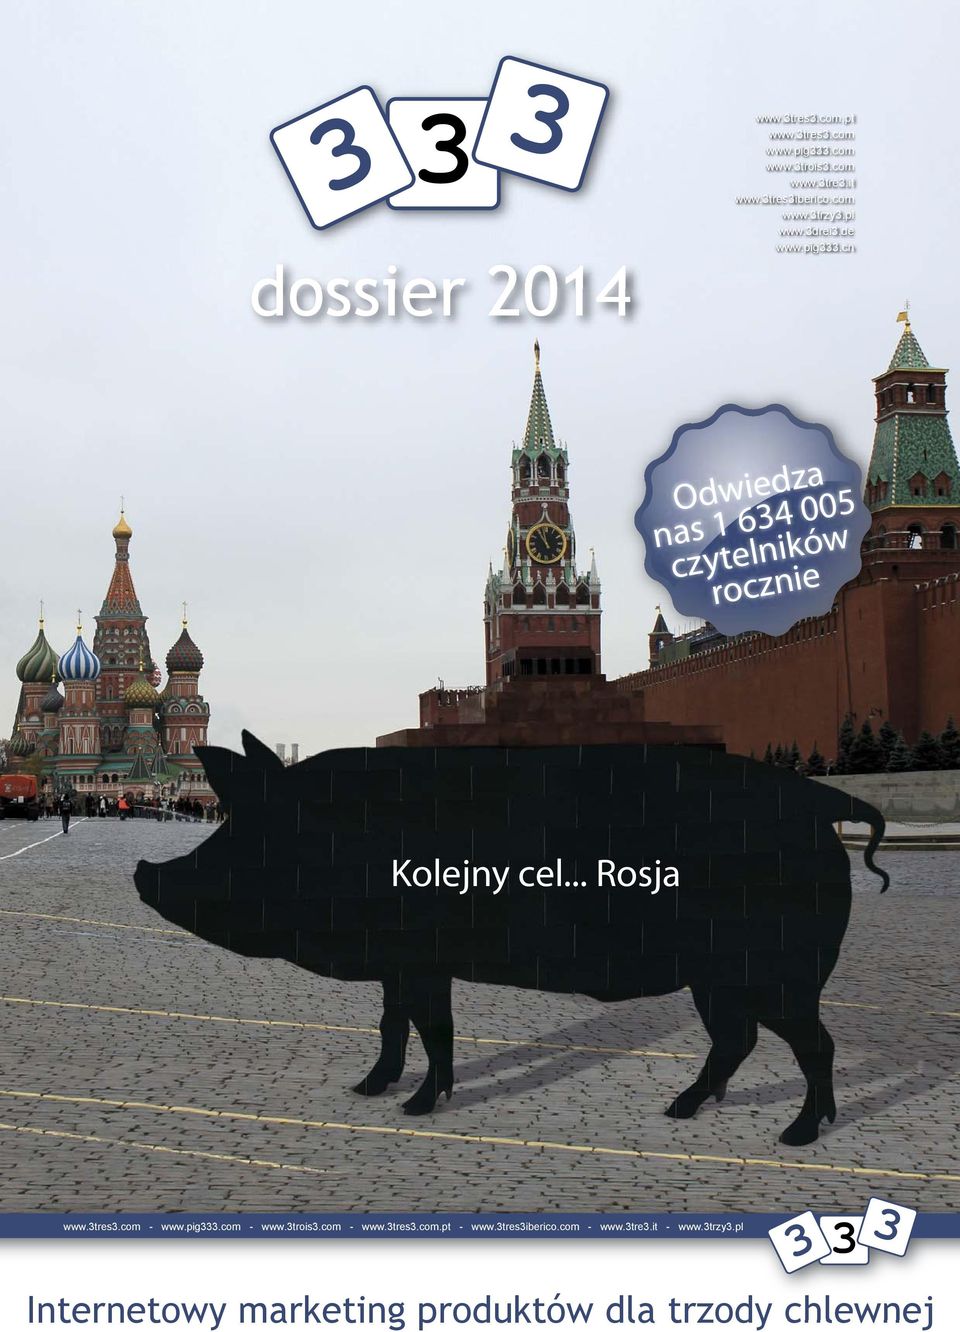 cn dossier 2014 Odwiedza nas 1 634 005 czytelników rocznie Kolejny cel... Rosja www.3tres3.